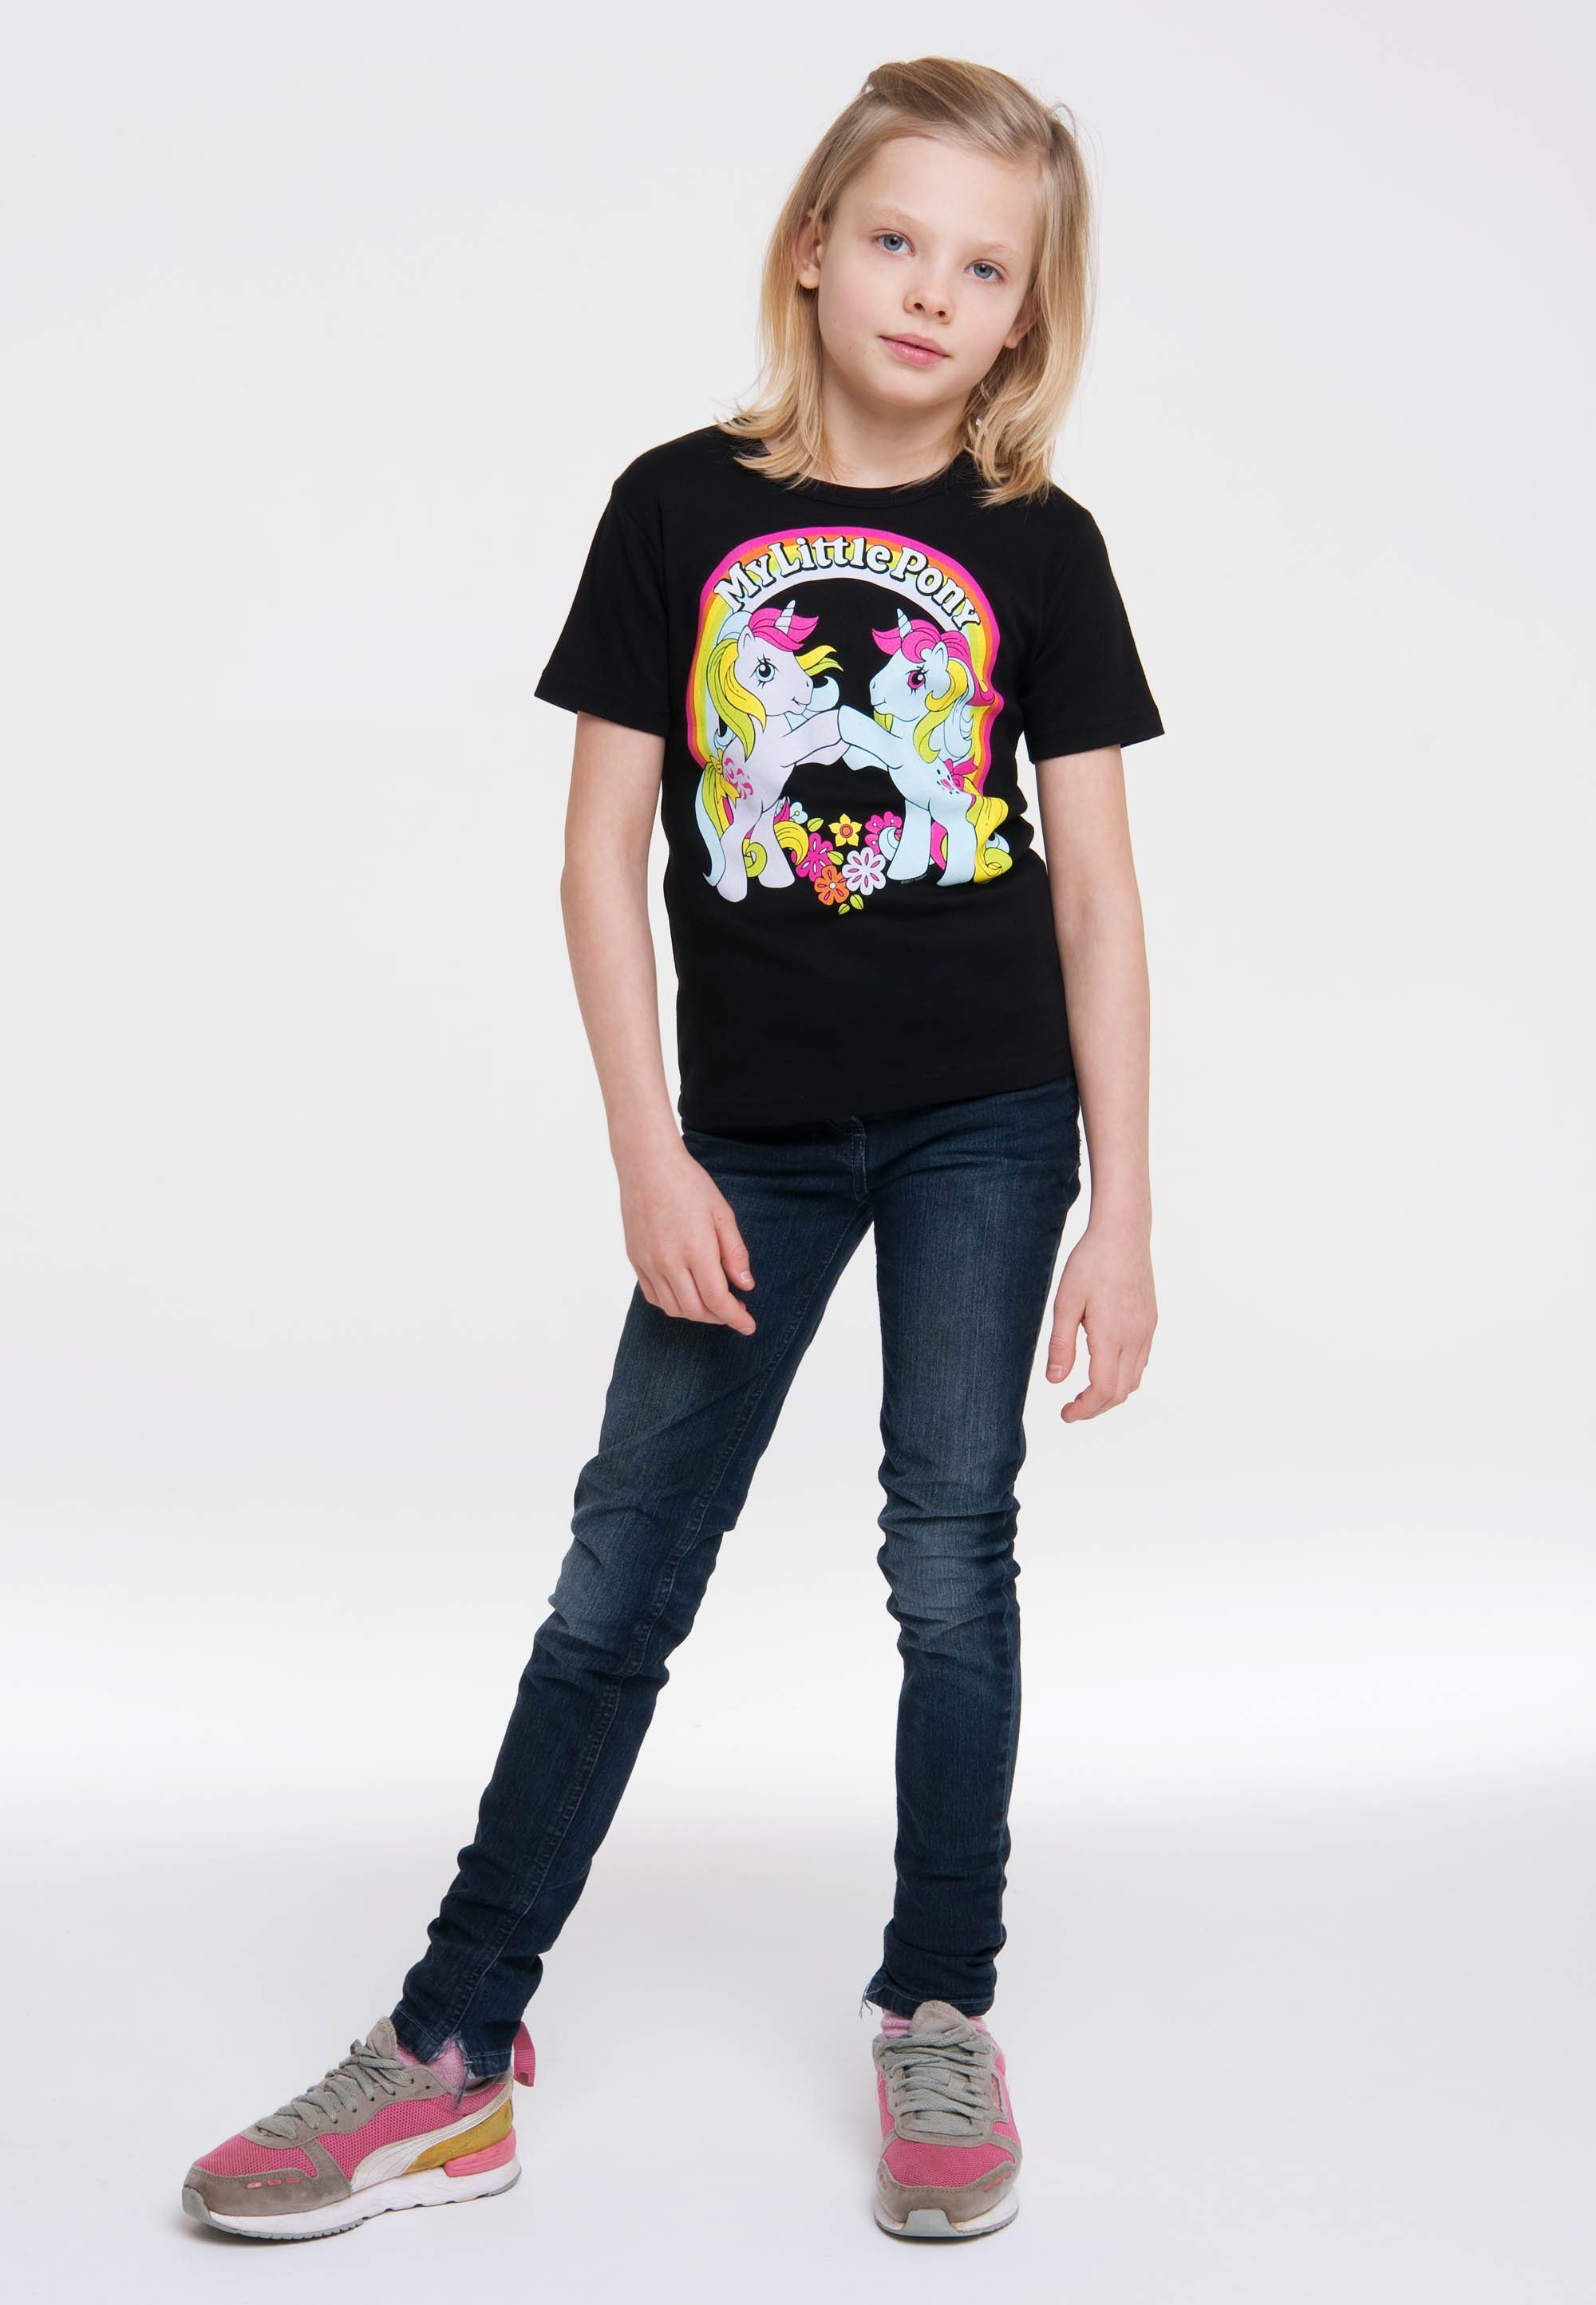 Pony LOGOSHIRT lizenzierten Little Originaldesign T-Shirt My im